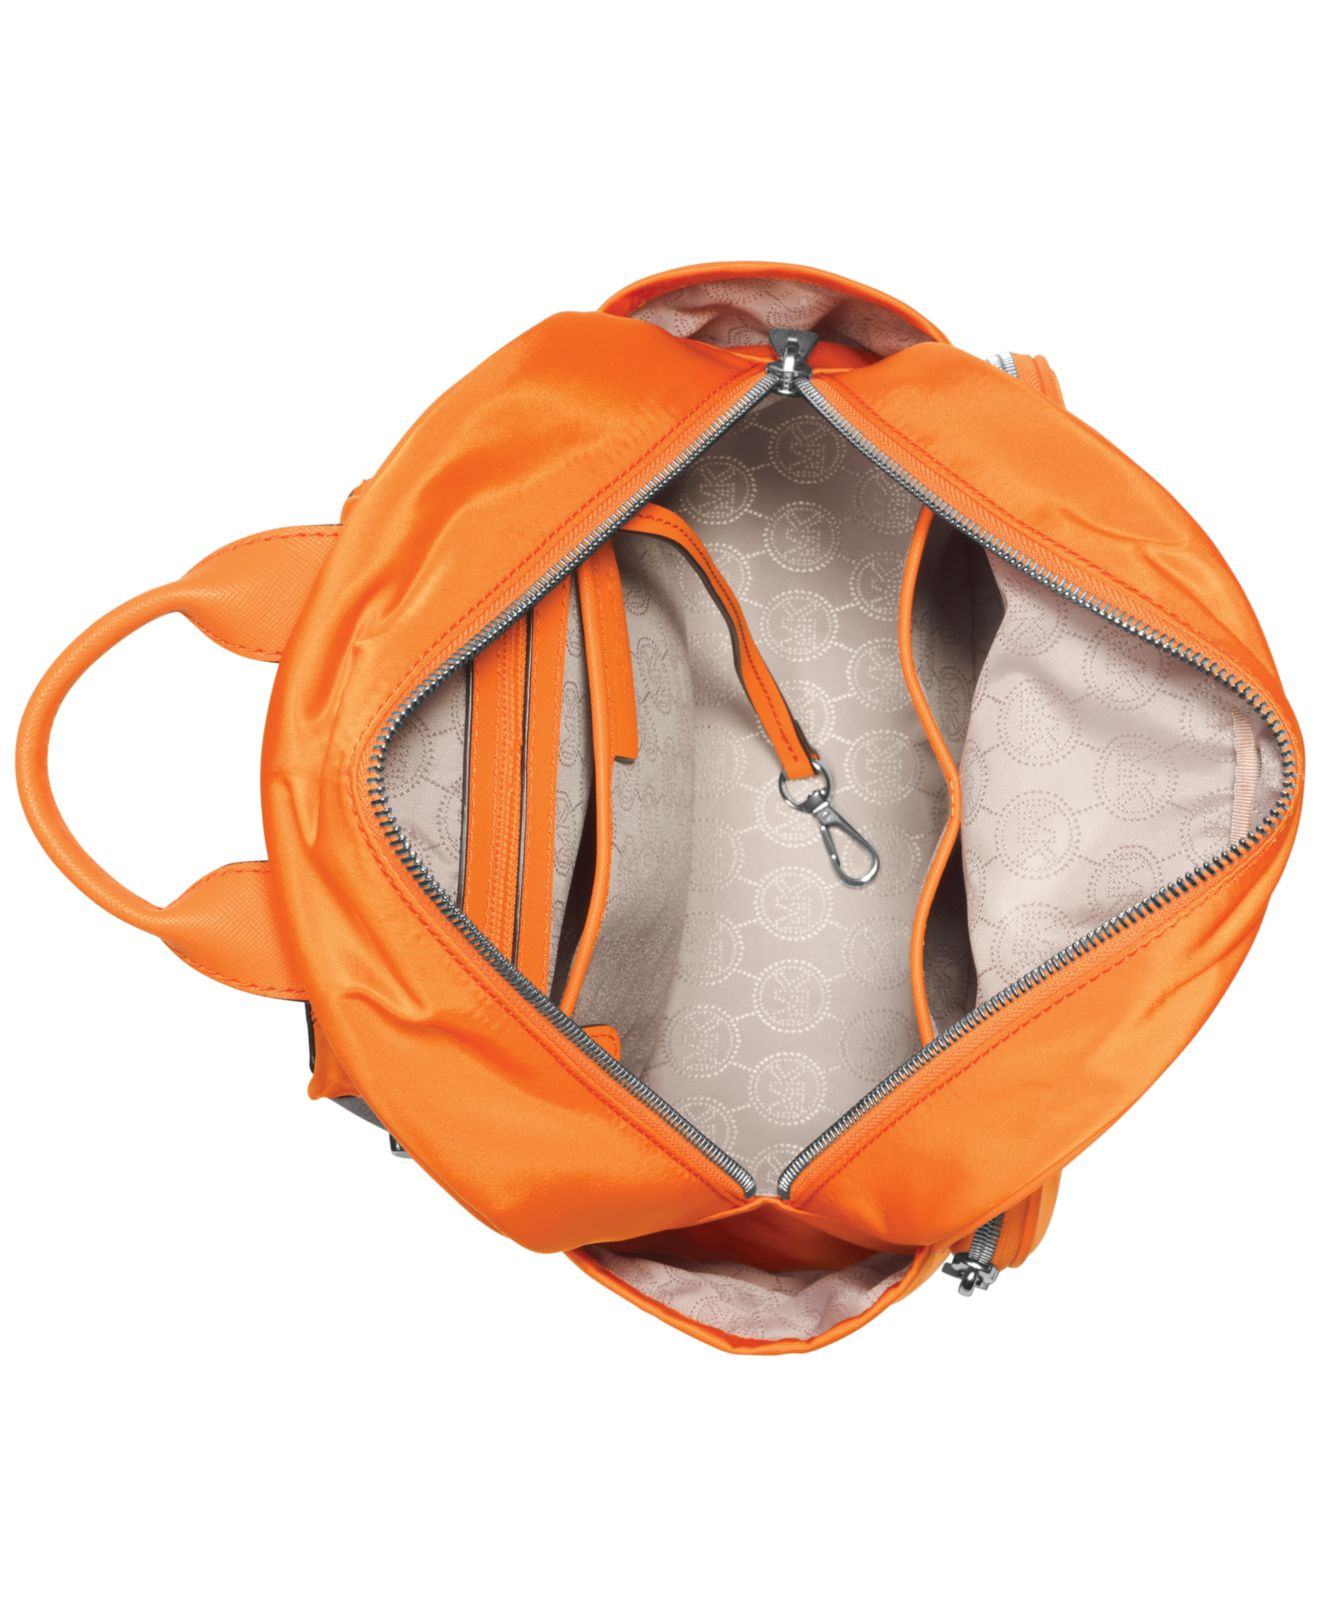 Michael Kors Men's Jet Set Backpack - Macy's